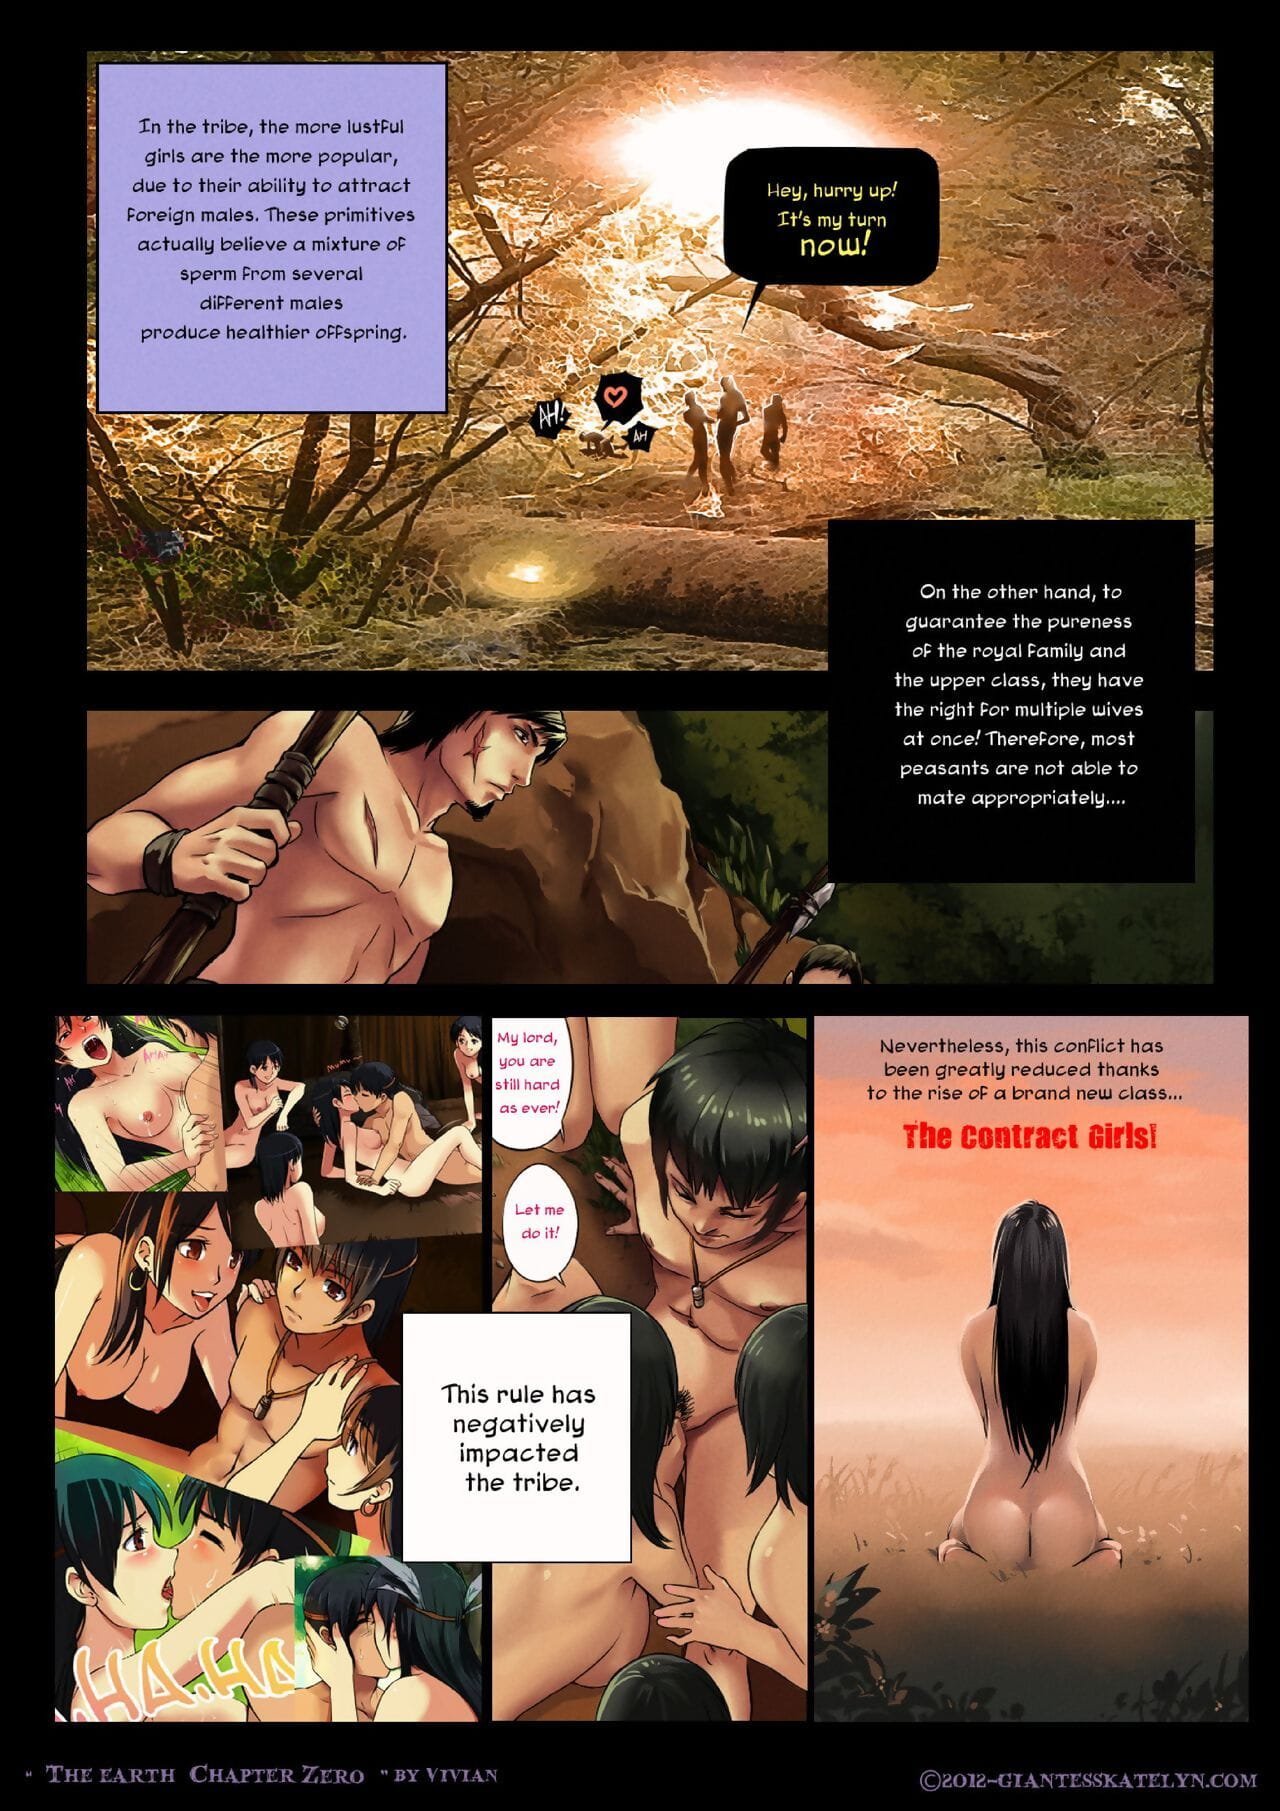 el la tierra capítulo Cero 1 2 page 1